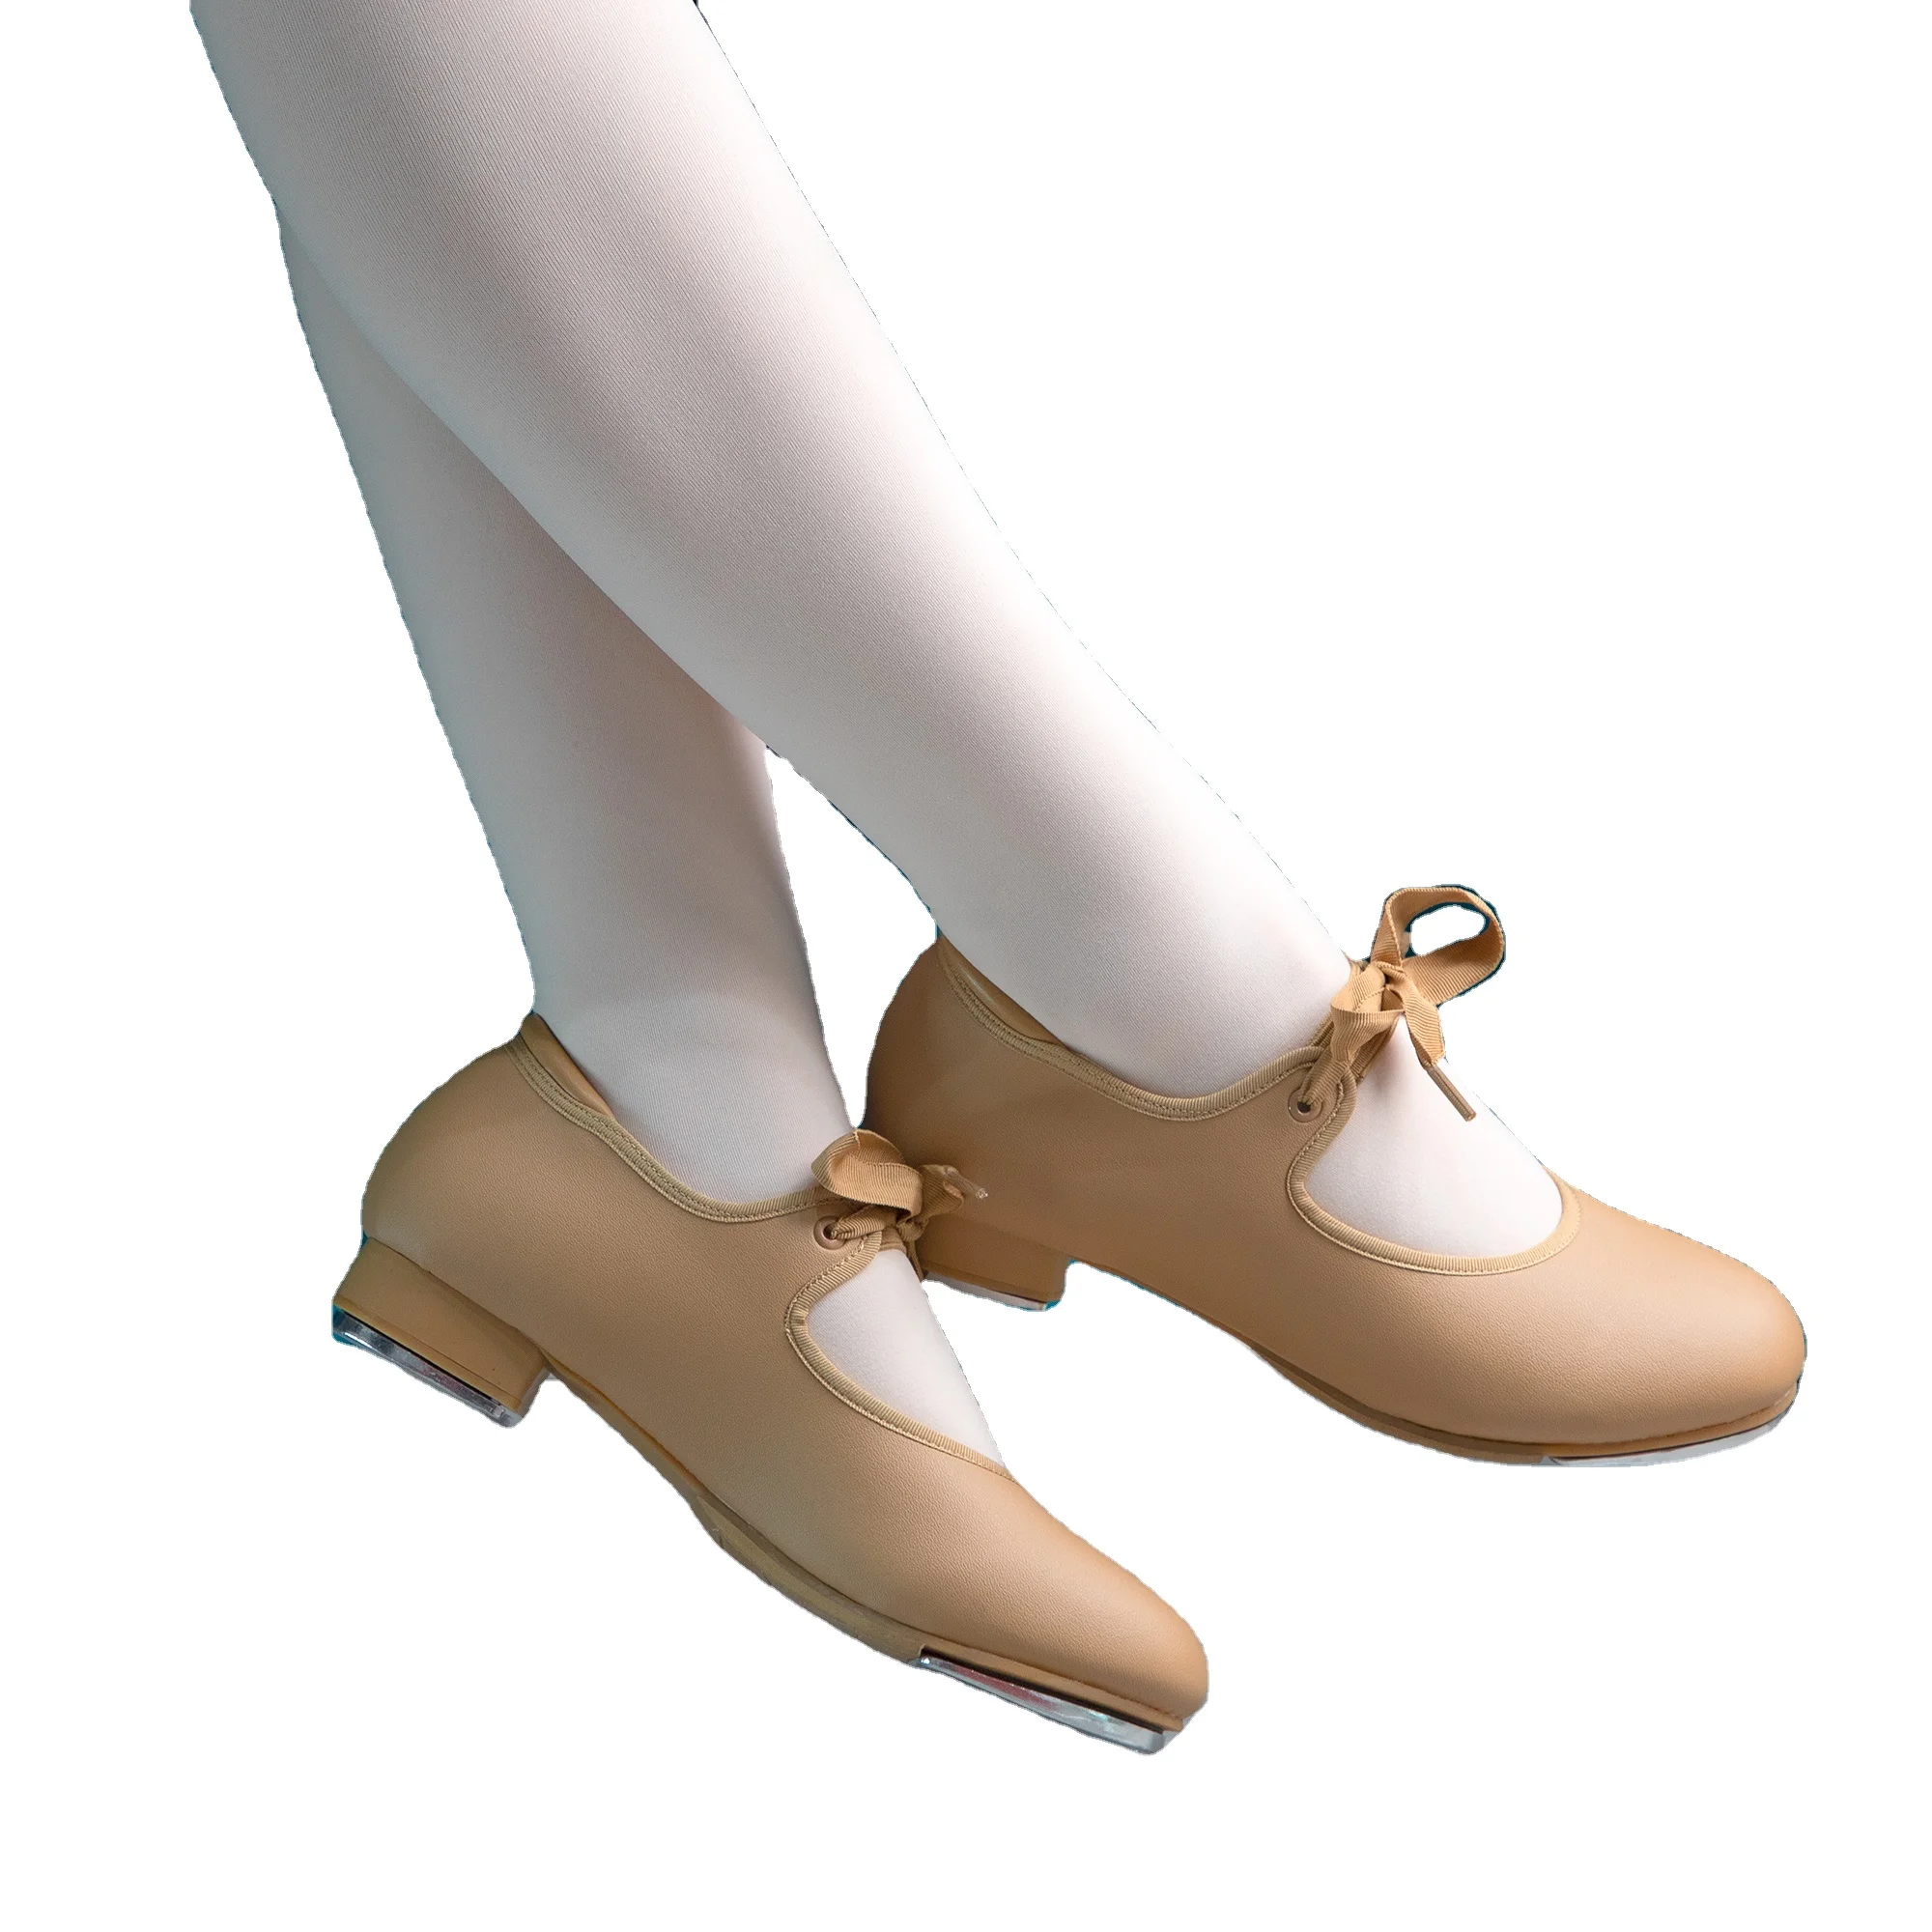 Dynadans-zapatos De Baile Con Suela Suave,Calzado Para Bailar Buy Exótico Zapatos De Baile,Shuffle Zapatos De Baile,Zapatos De Tap Dynadansjazz Zapatos Product on